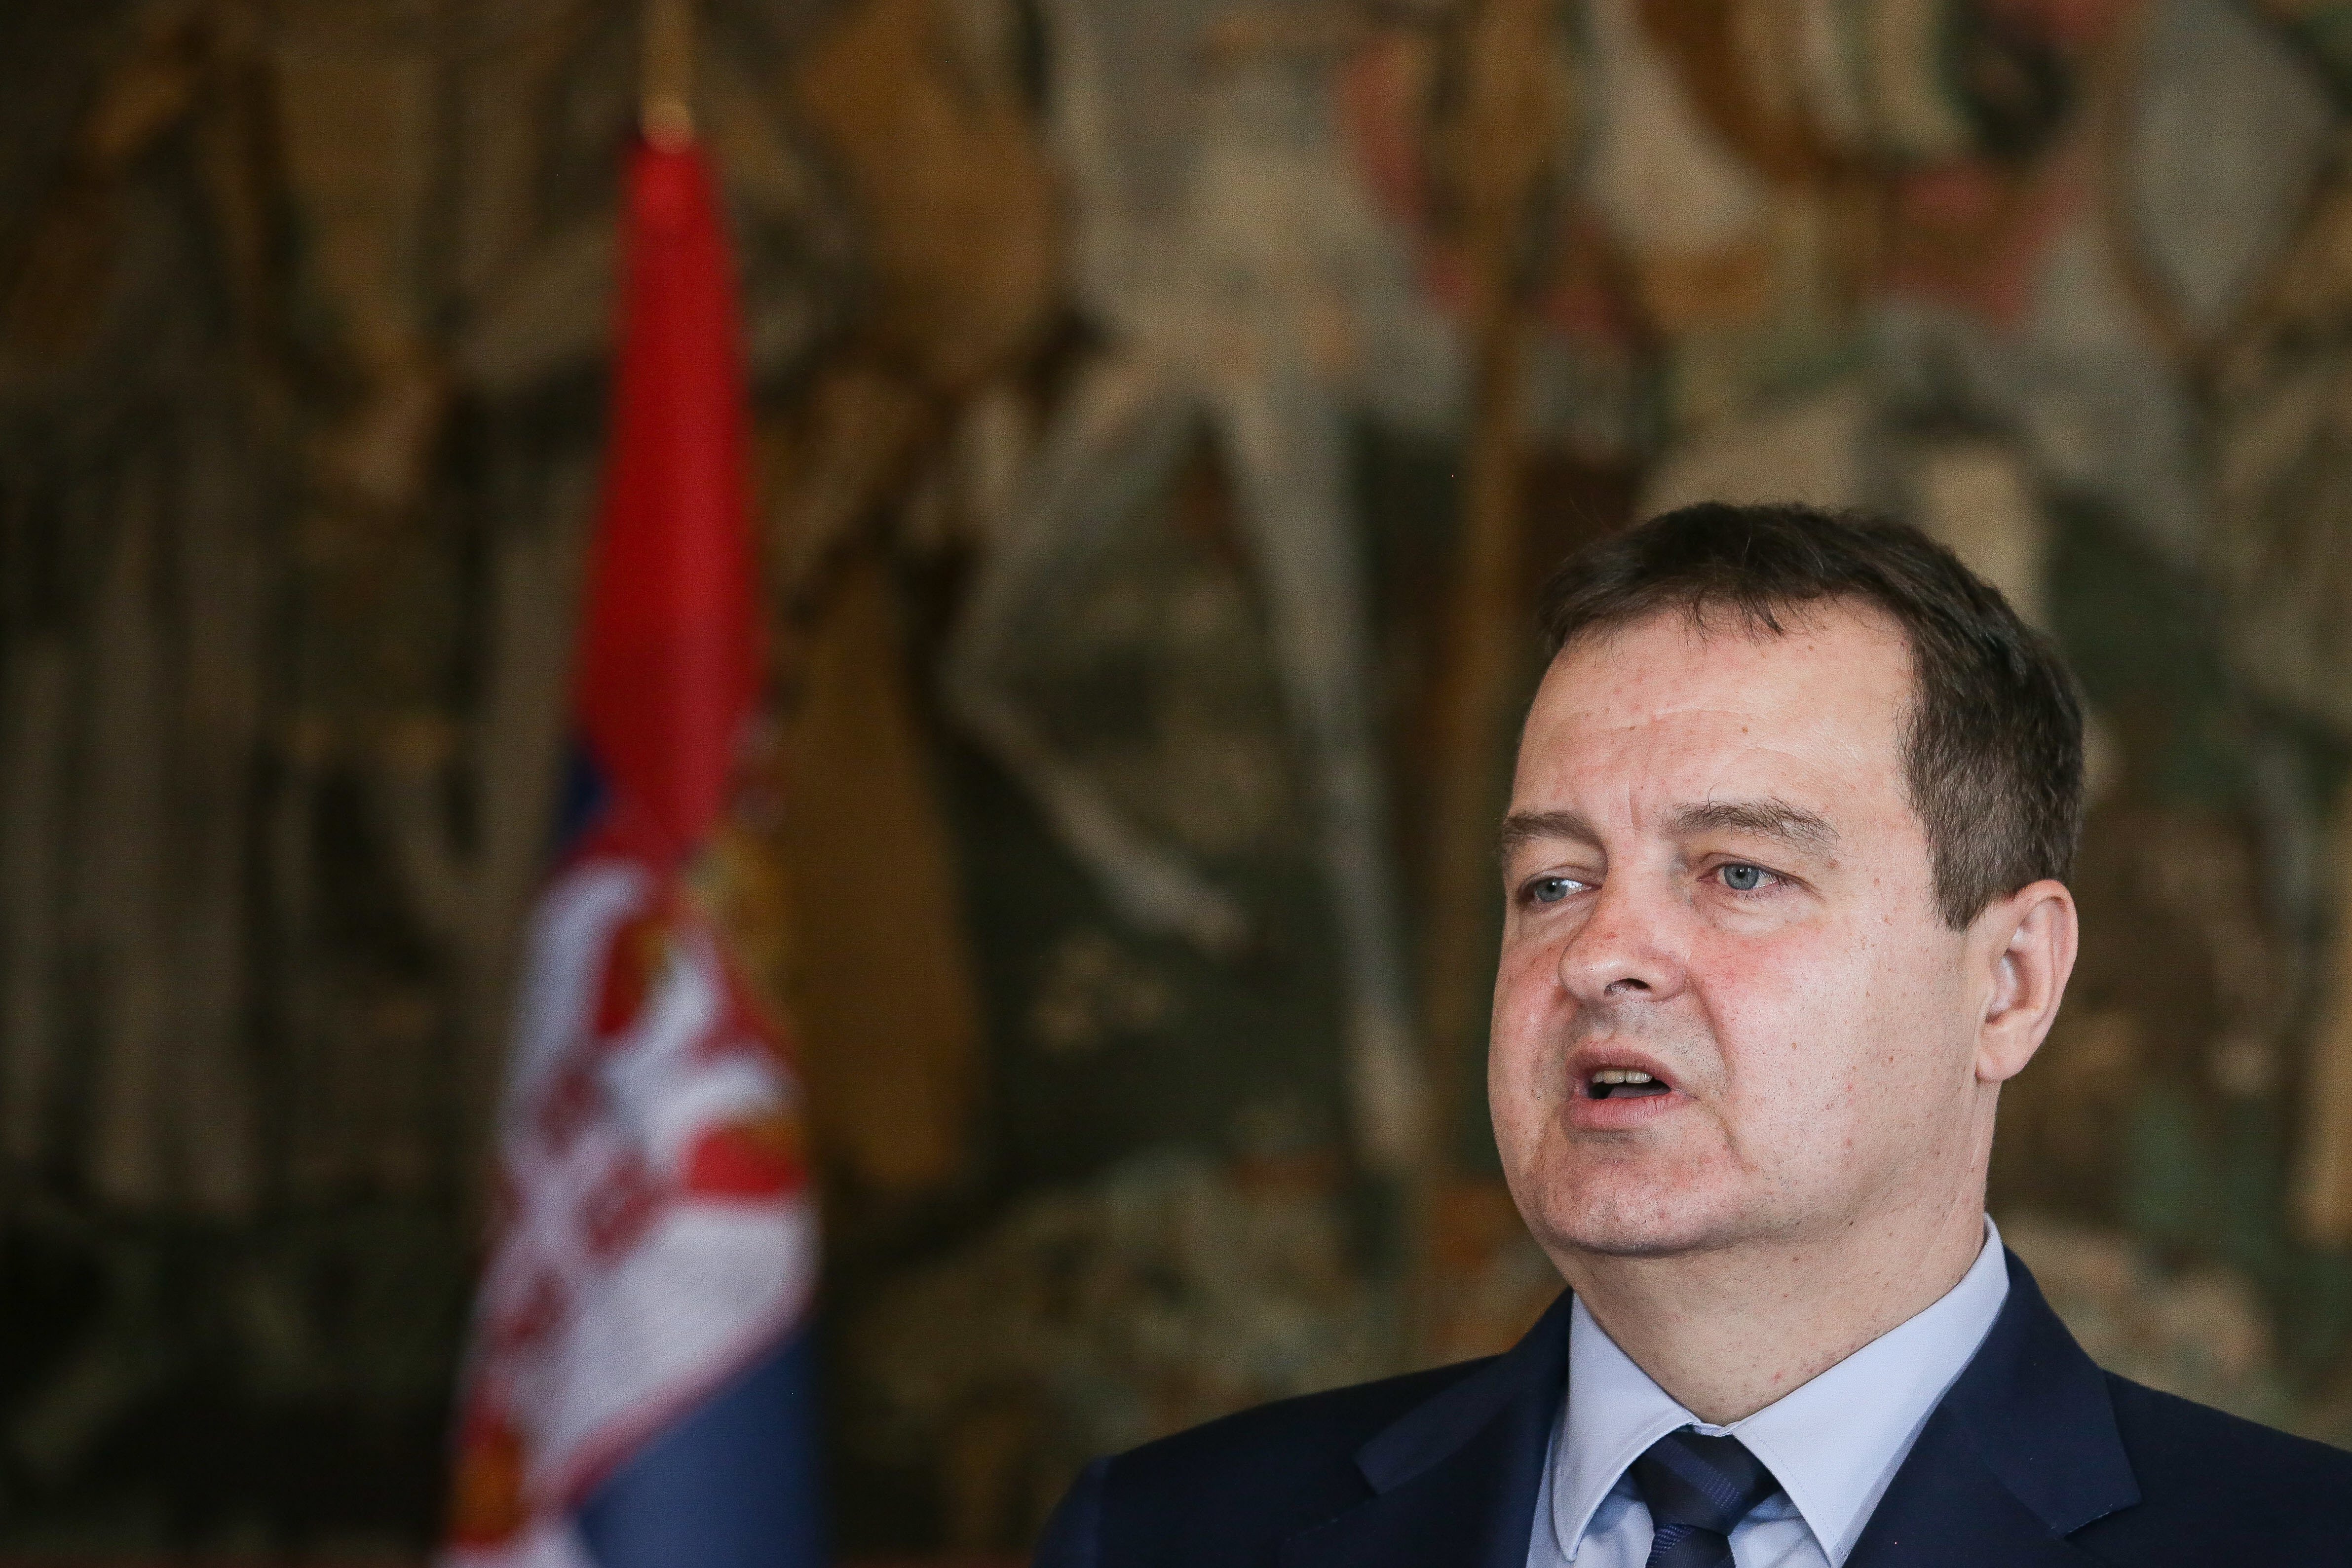 Adesão da Sérvia à UE é perturbada pela ligação à questão do Kosovo, diz chefe da diplomacia de Belgrado